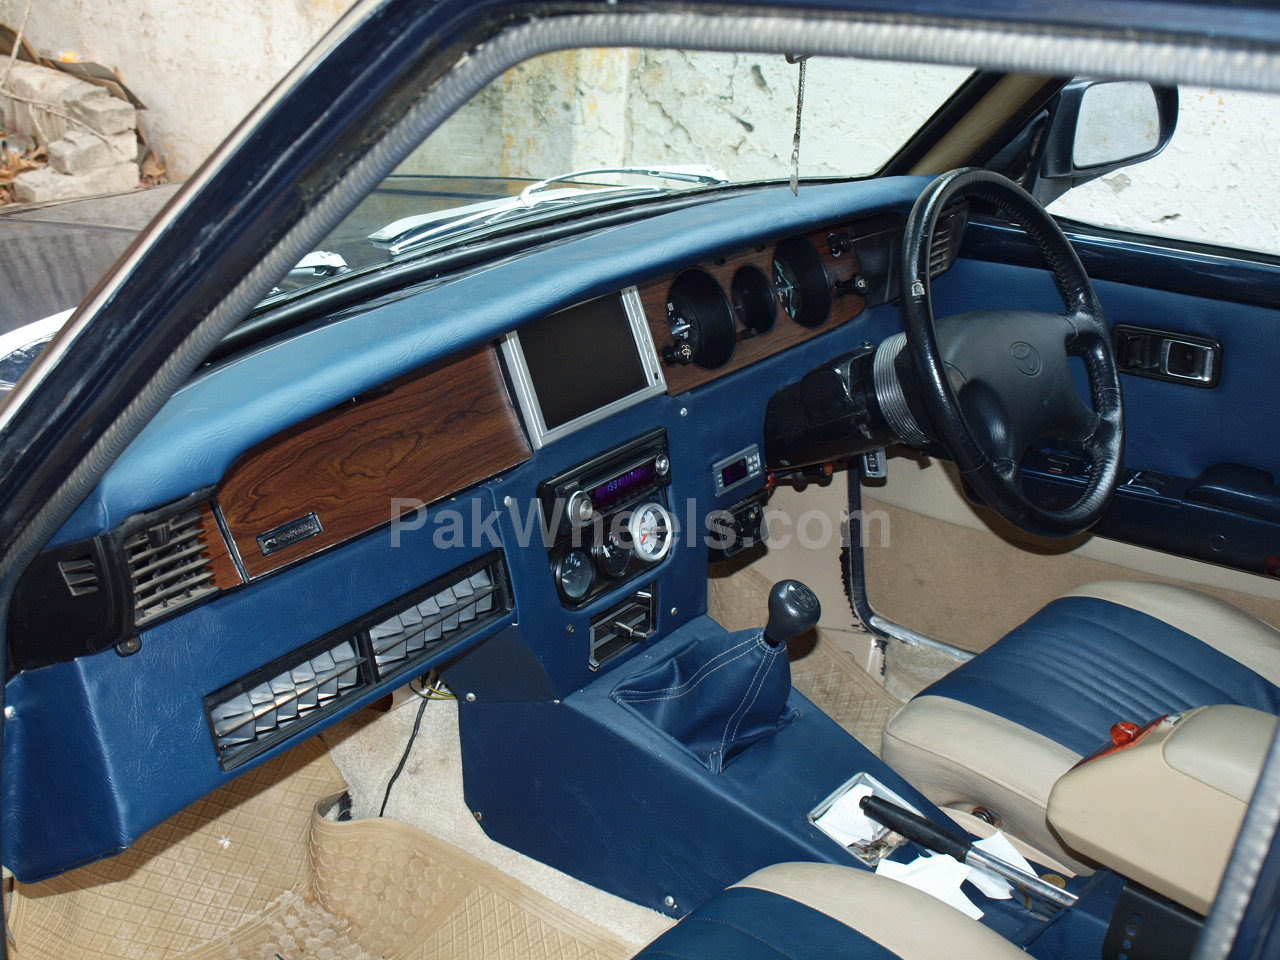 58 Modifikasi Interior Mobil Civic Wonder Ragam Modifikasi